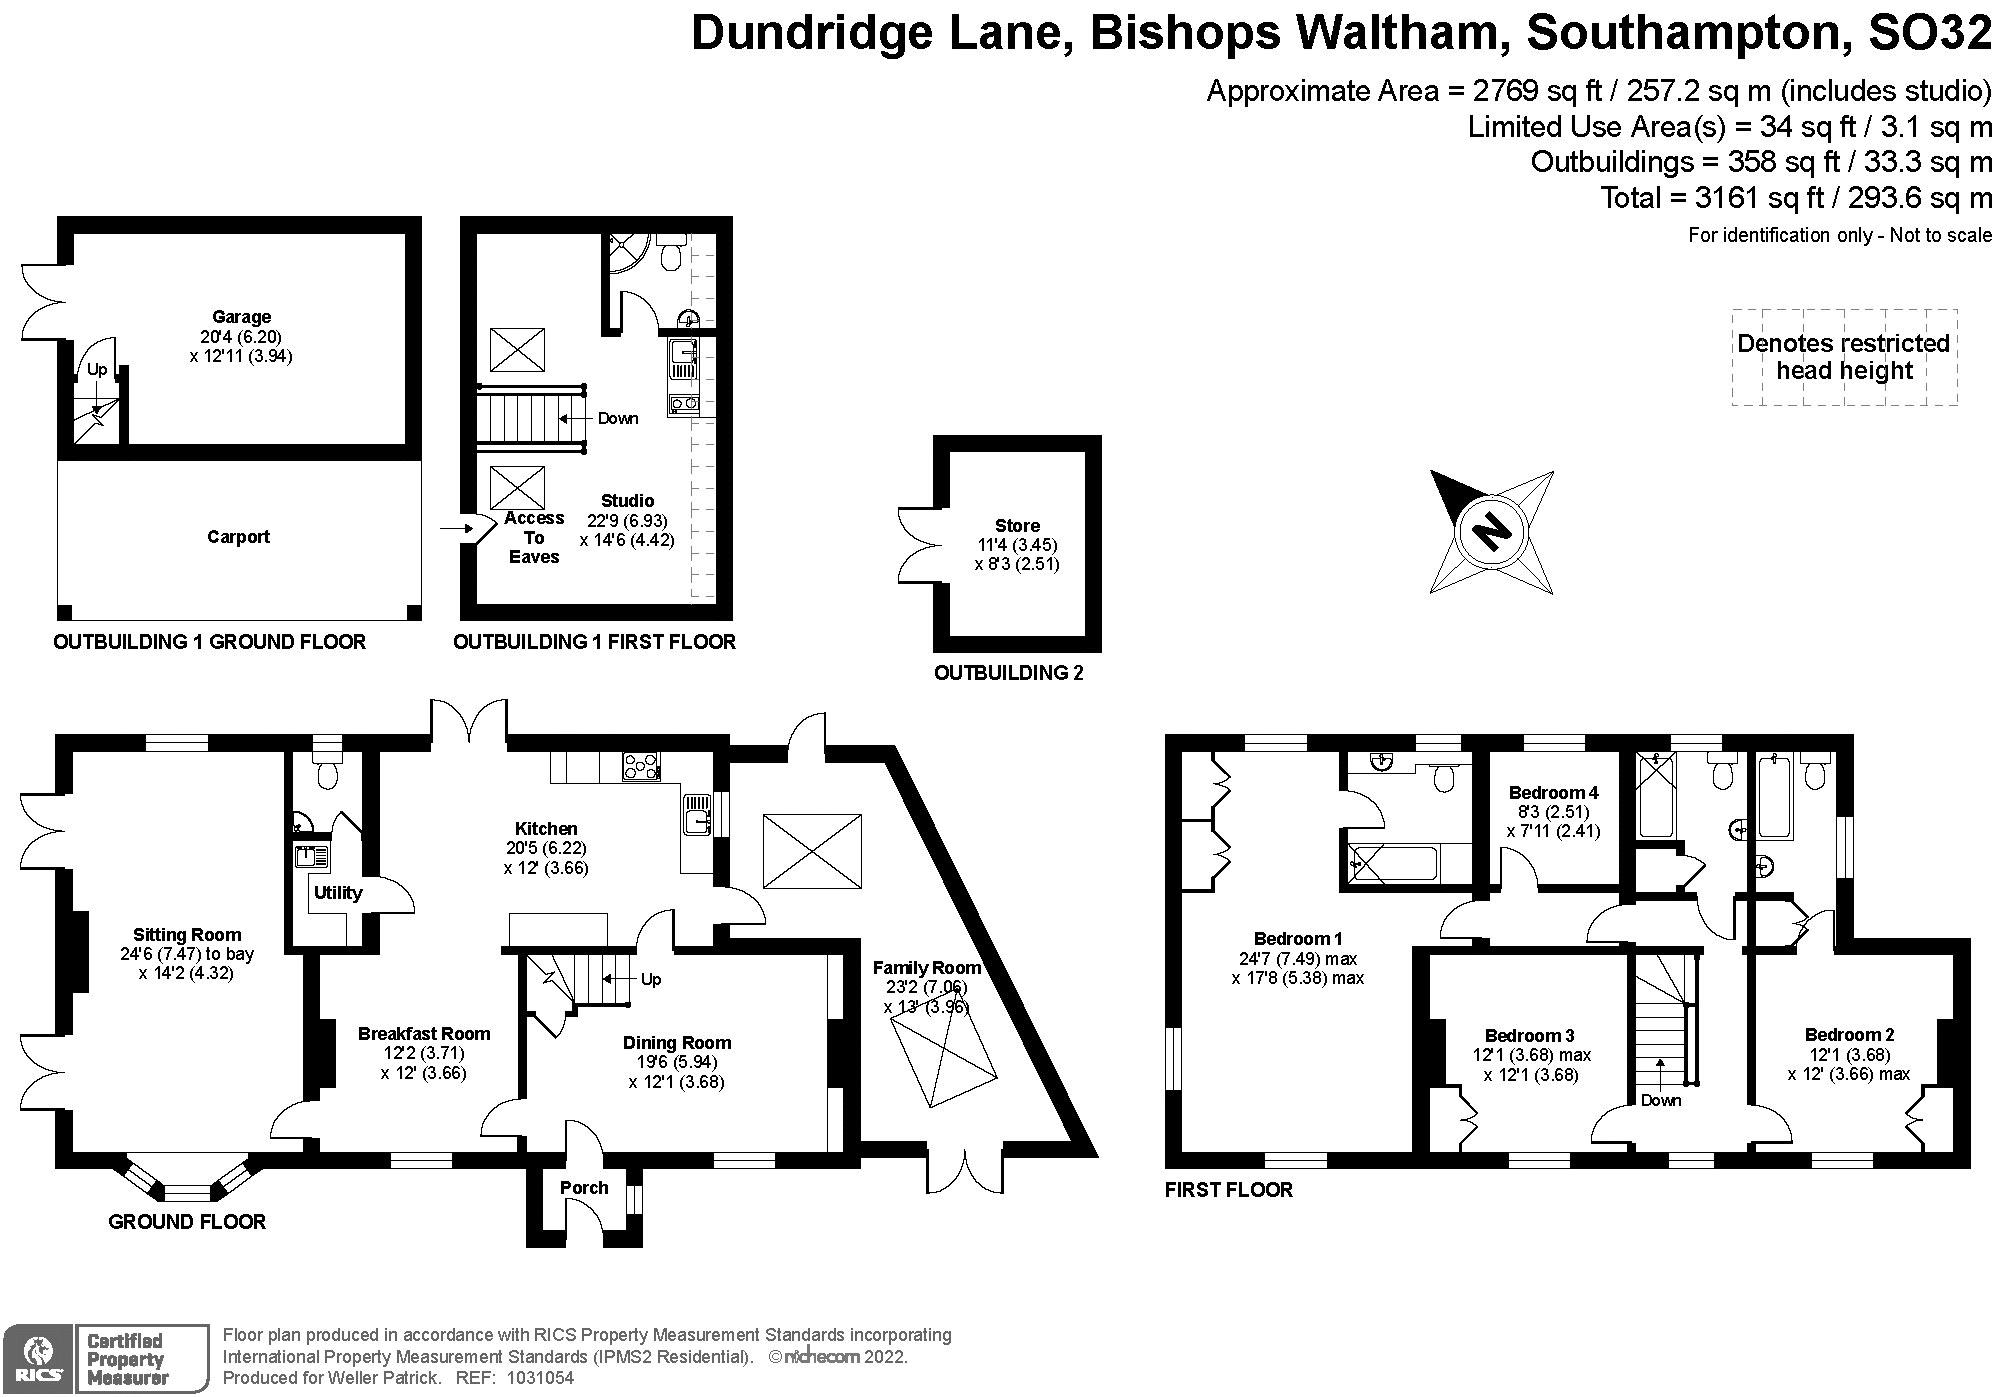 Dundridge Lane Bishops Waltham